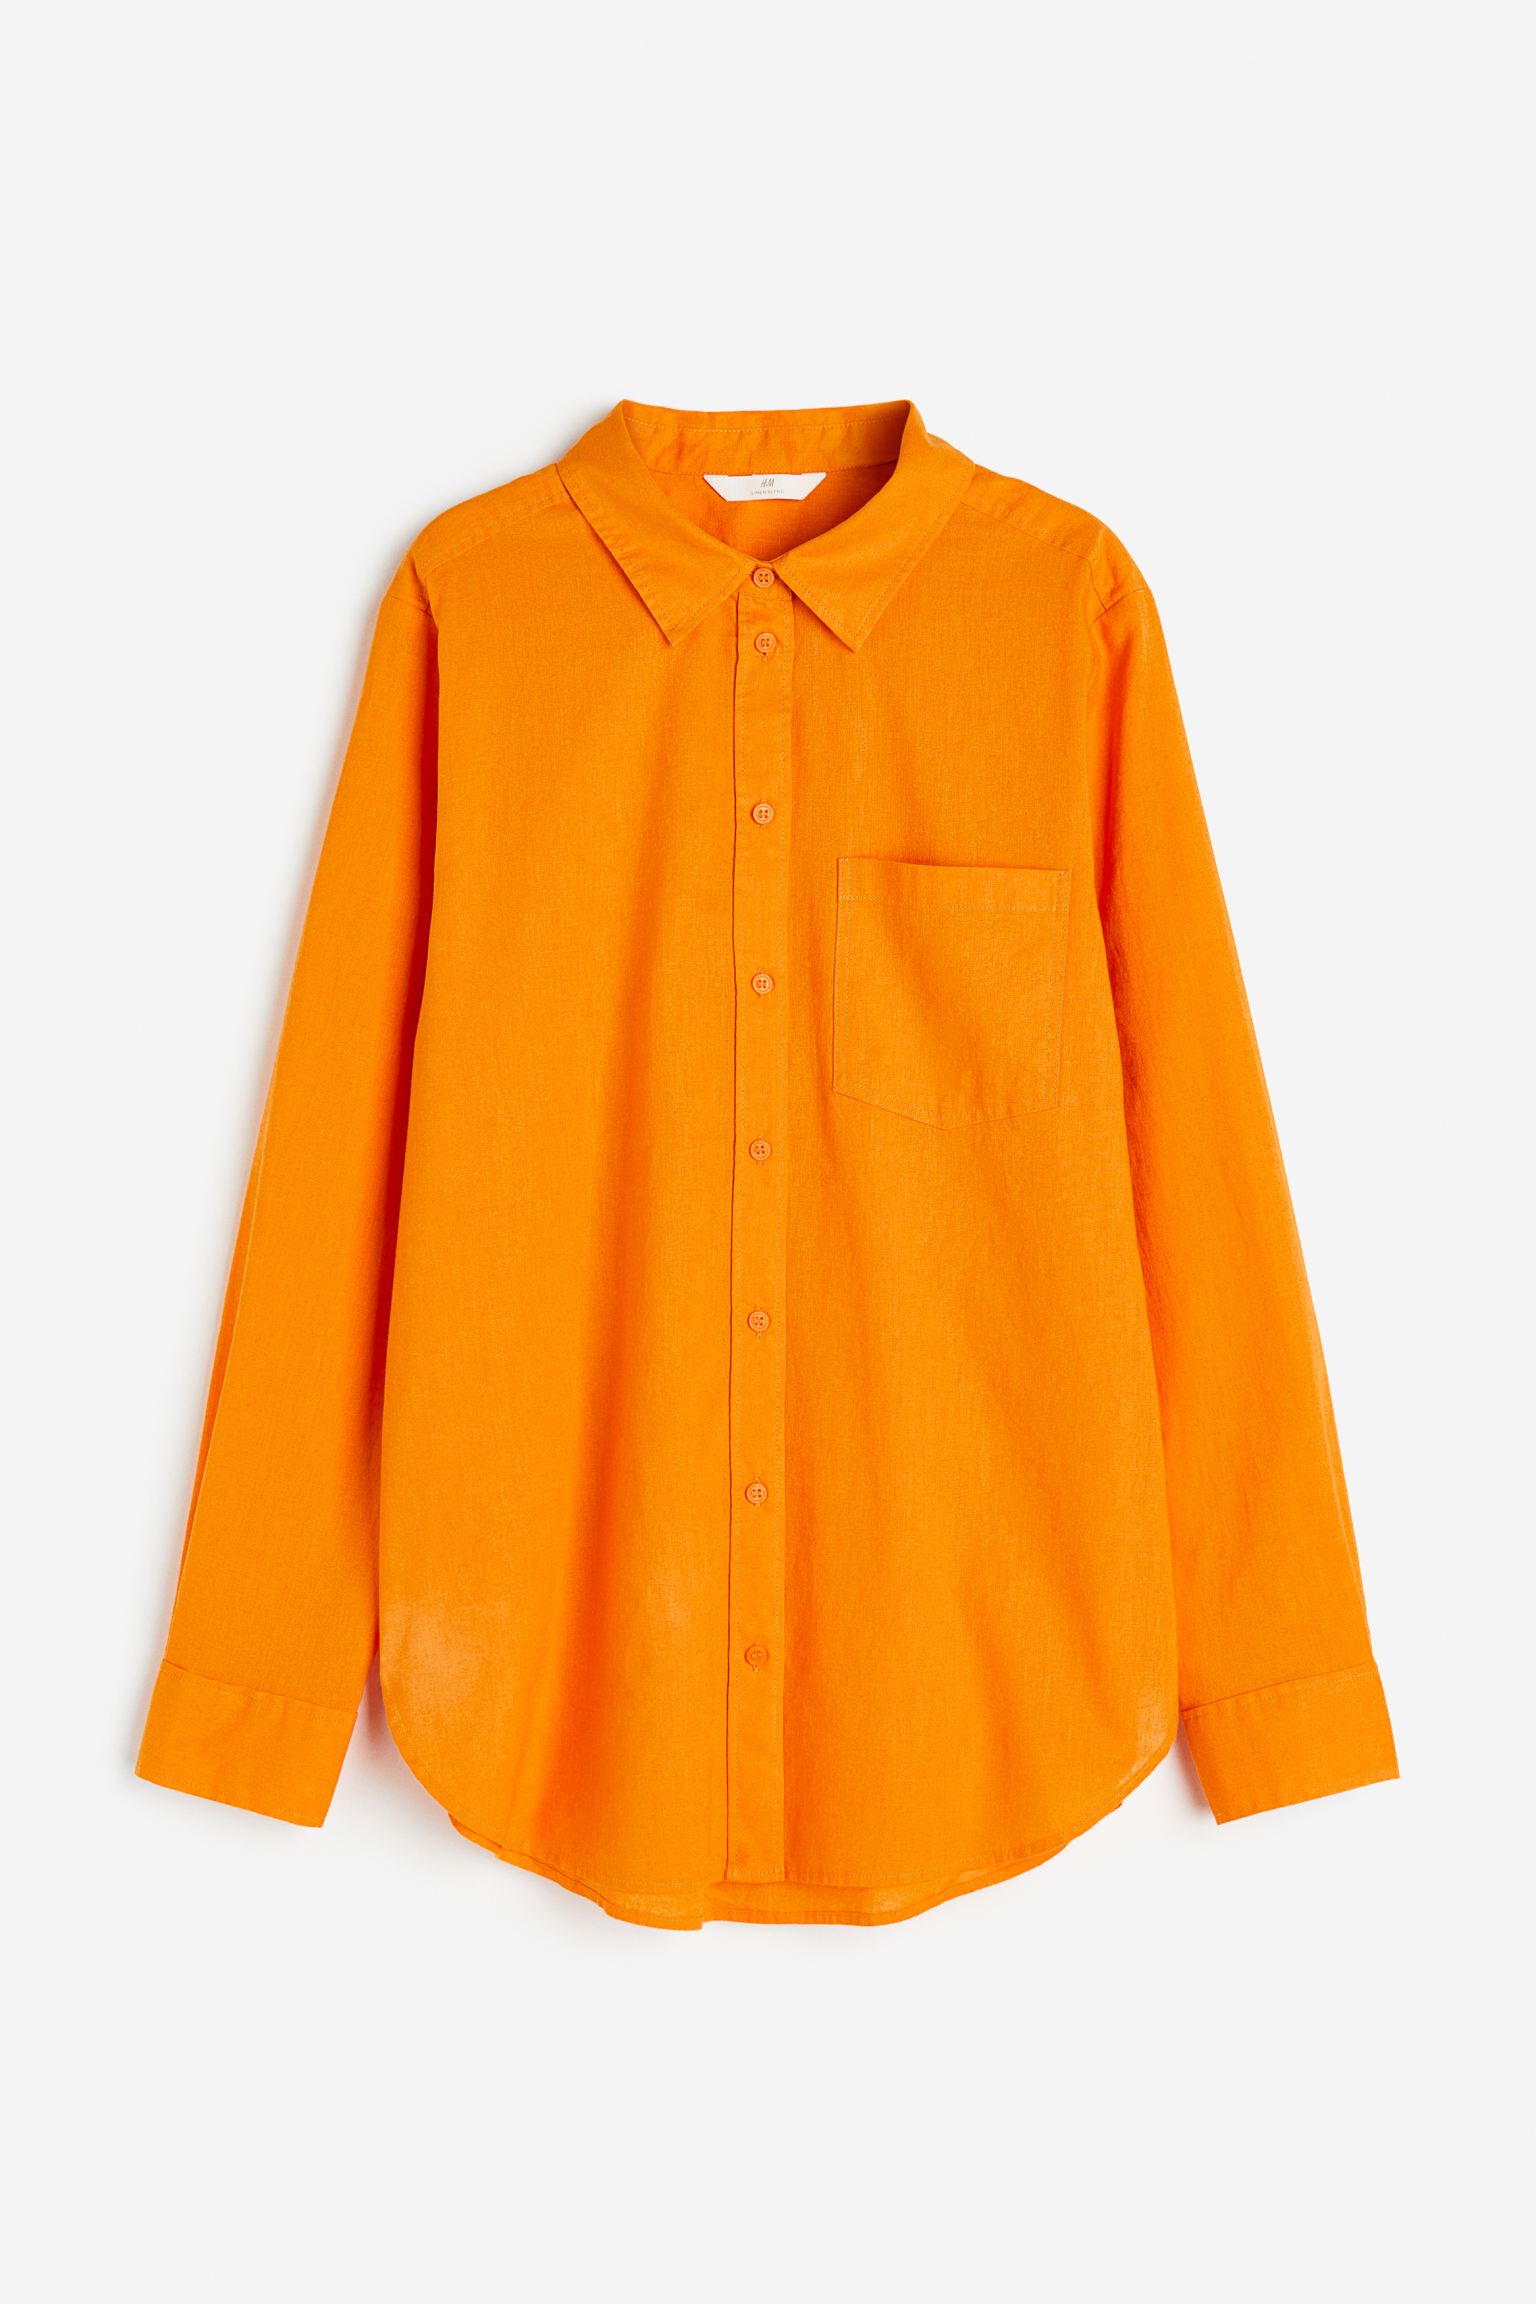 Рубашка женская H&M 1027844023 оранжевая XL (доставка из-за рубежа)